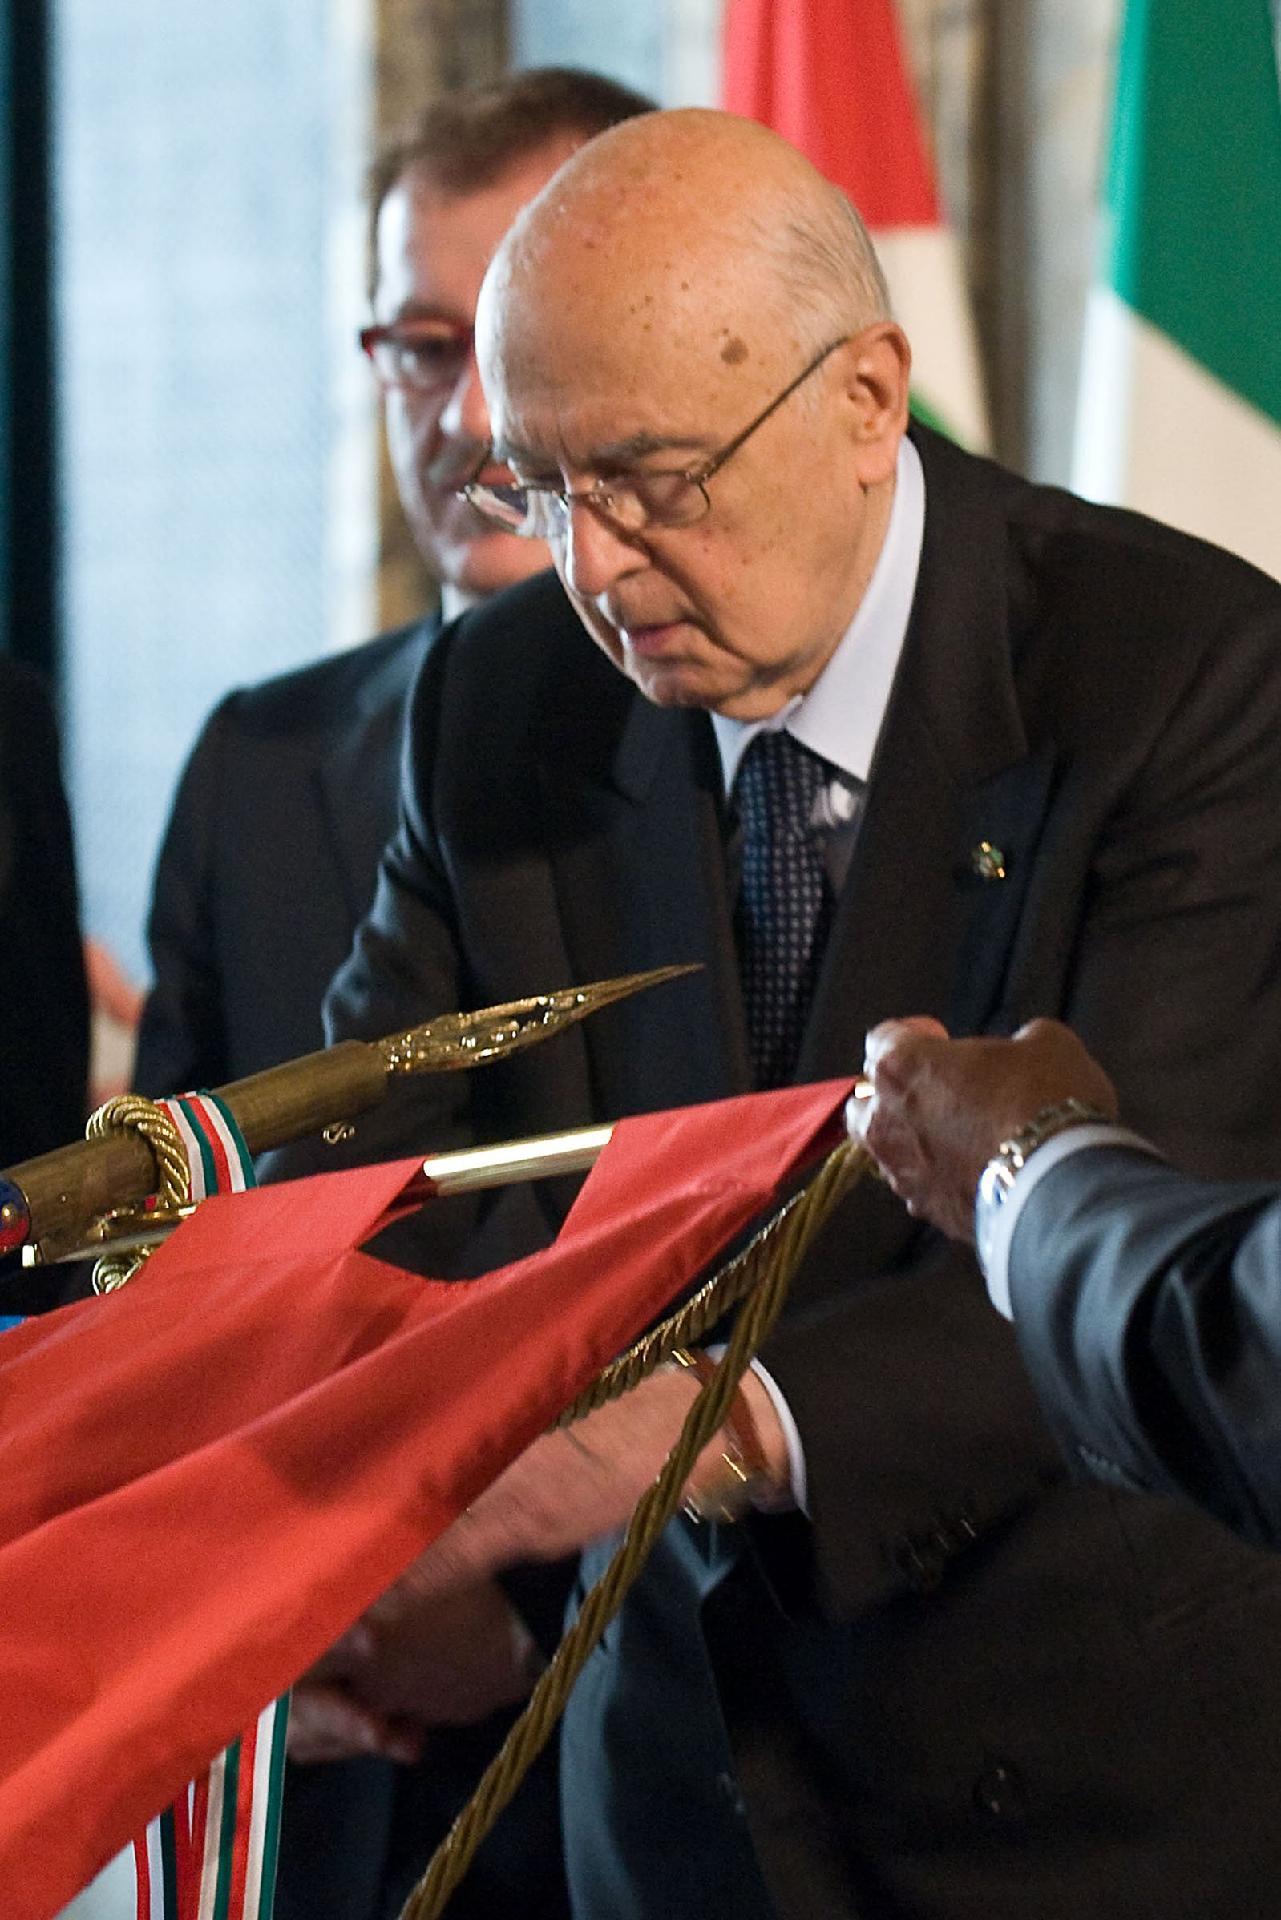 Il Presidente Giorgio Napolitano conferisce la Medaglia d'Oro al Merito Civile al Gonfalone della Provincia di Forlì-Cesena